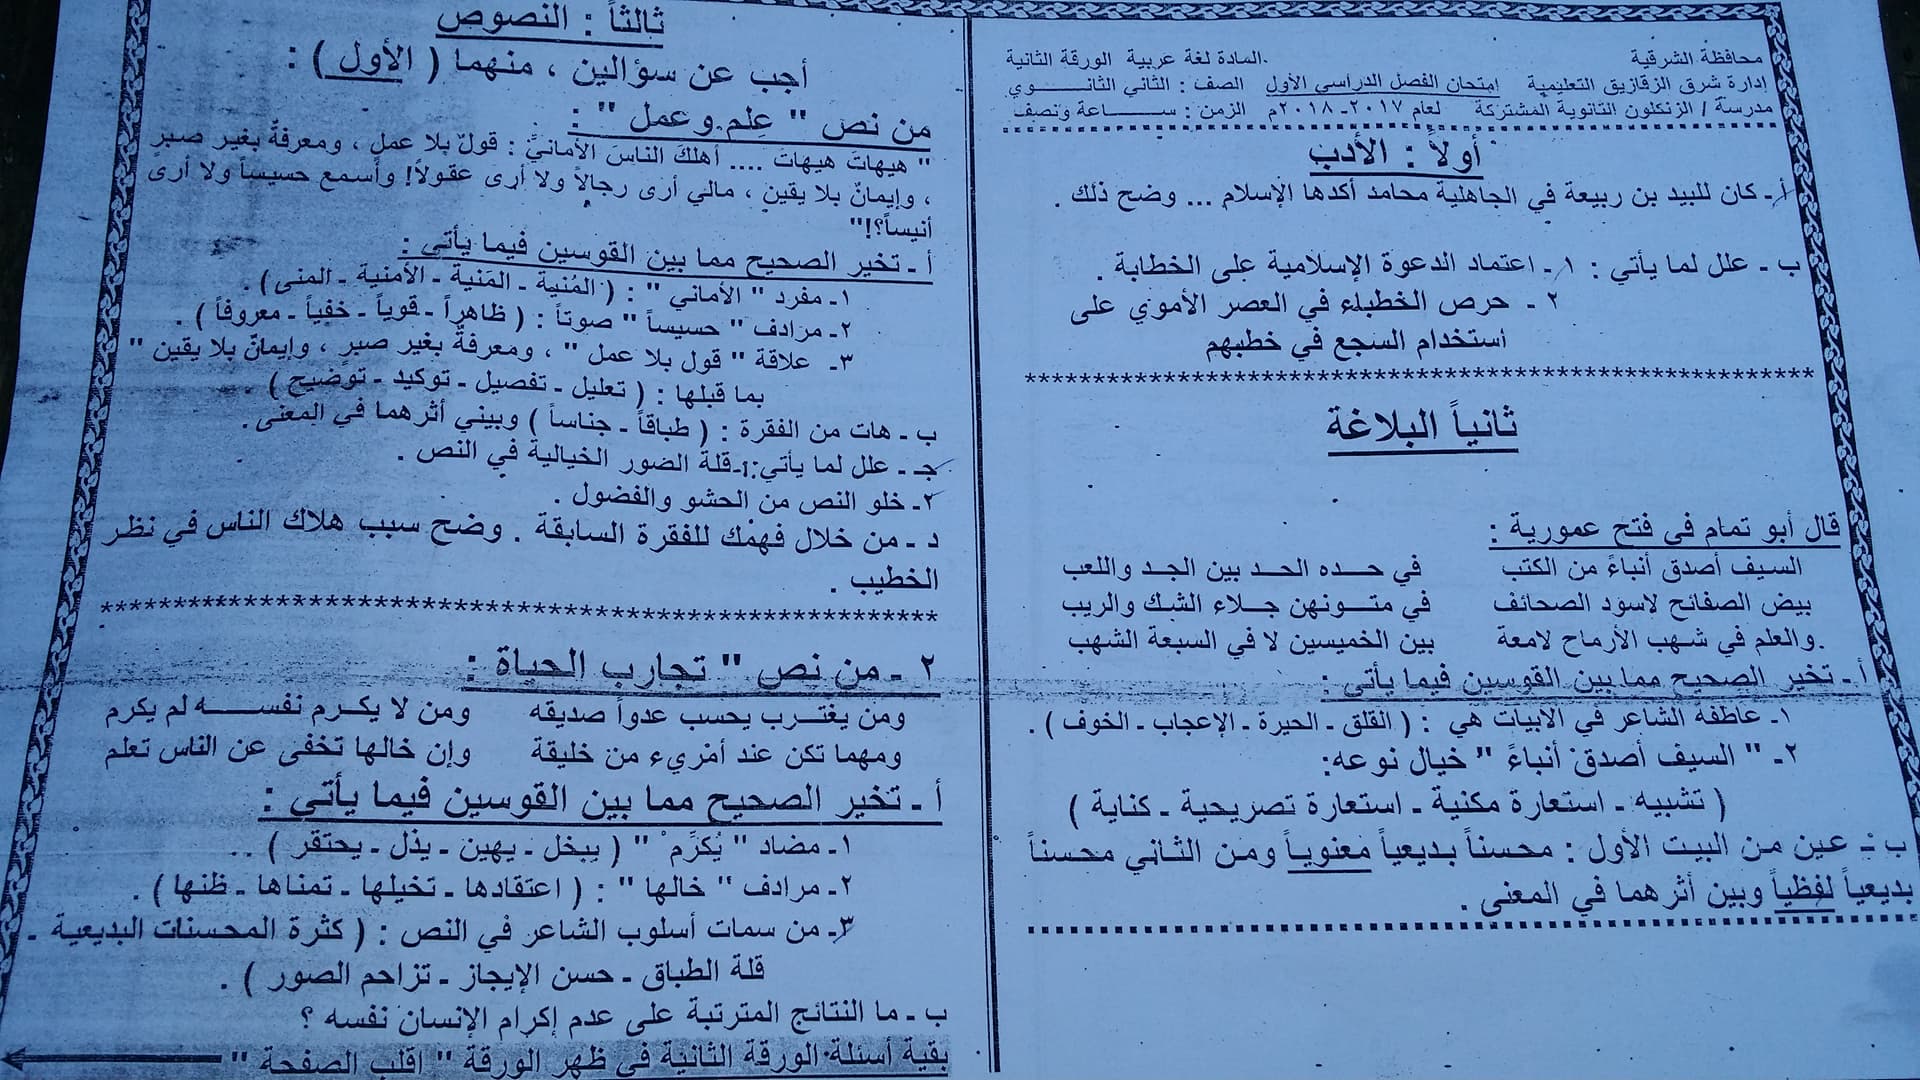 امتحان اللغة العربية للصف الثانى الثانوى الترم الاول 2018 مدرسة الزنكلون بالشرقية